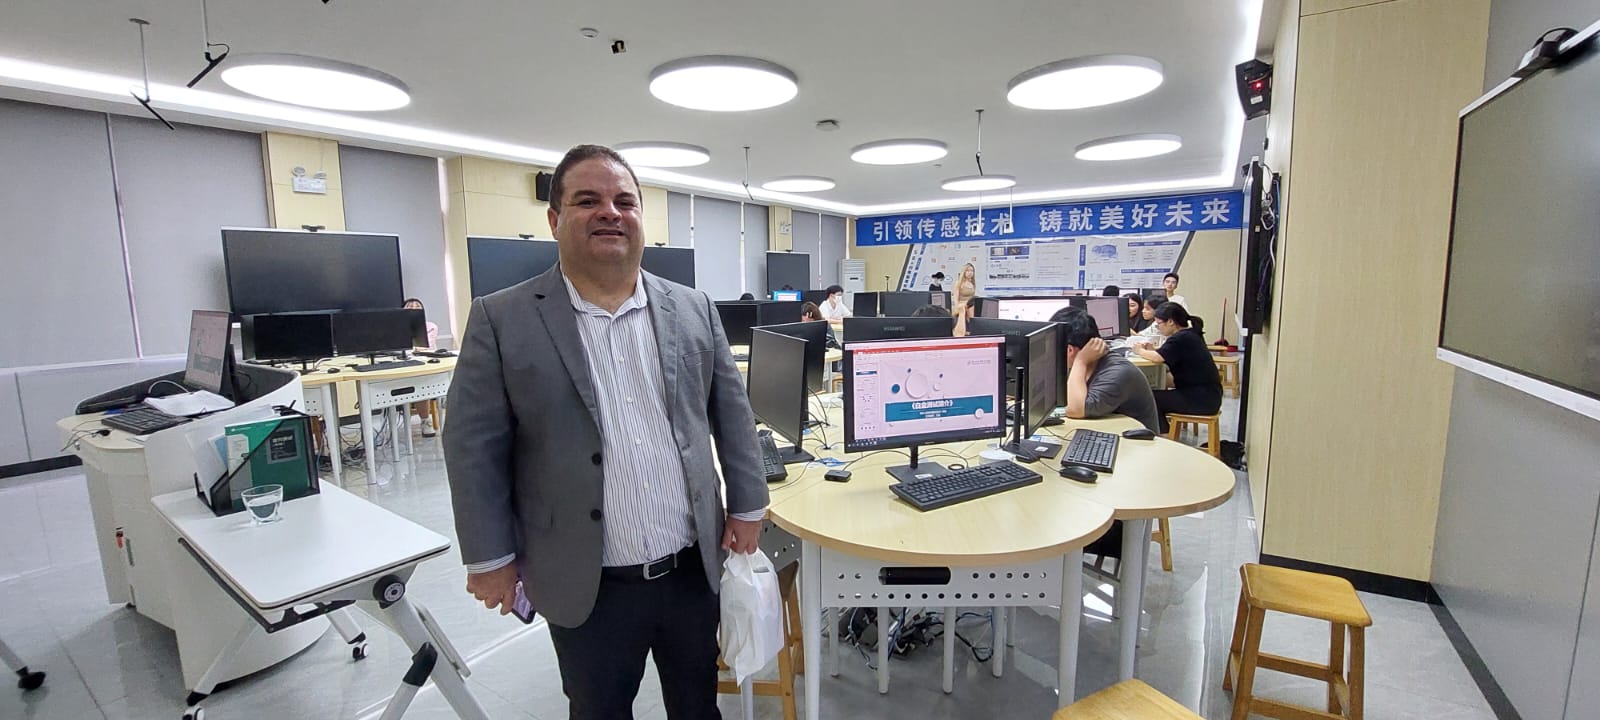 Delegação do IFPB visita o Instituto de Tecnologia e Informação de Shenzhen, na China (13).jpeg